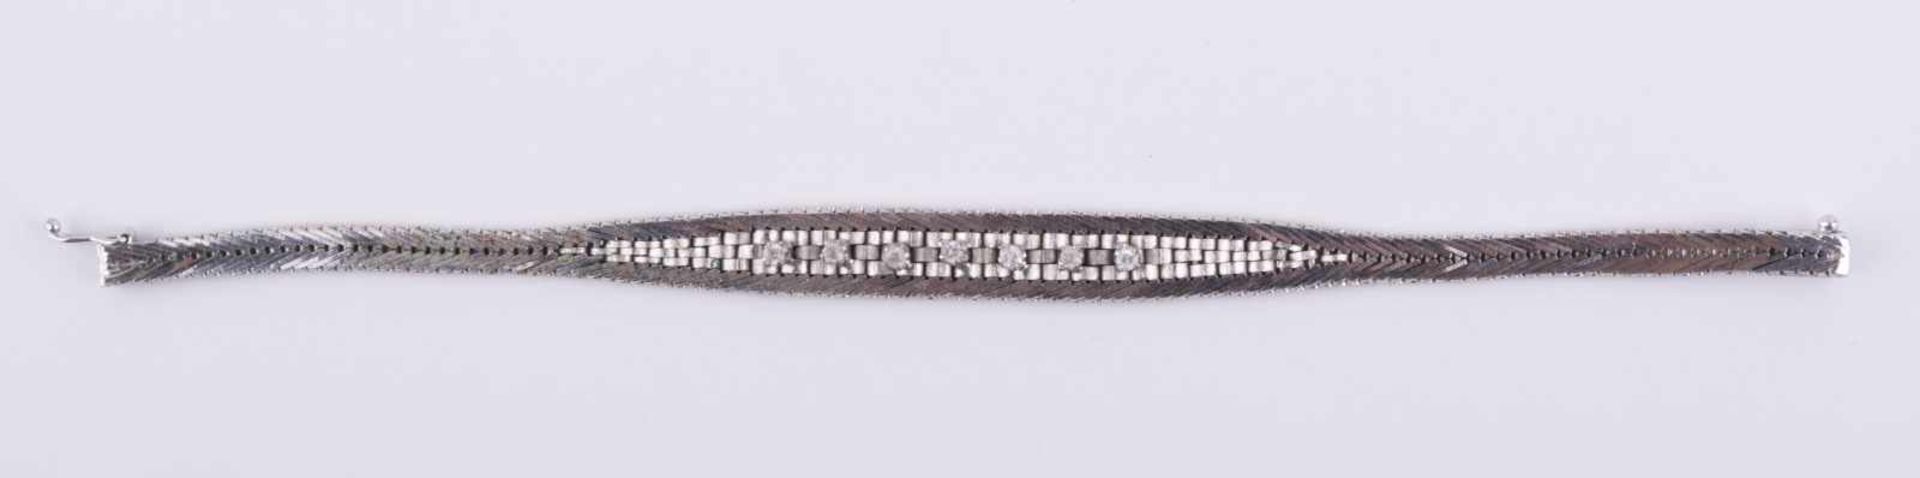 Brillant Silberarmband / Brilliant silver necklace Silber 835/000, mit 7 kleinen Brillanten, L: - Bild 3 aus 8